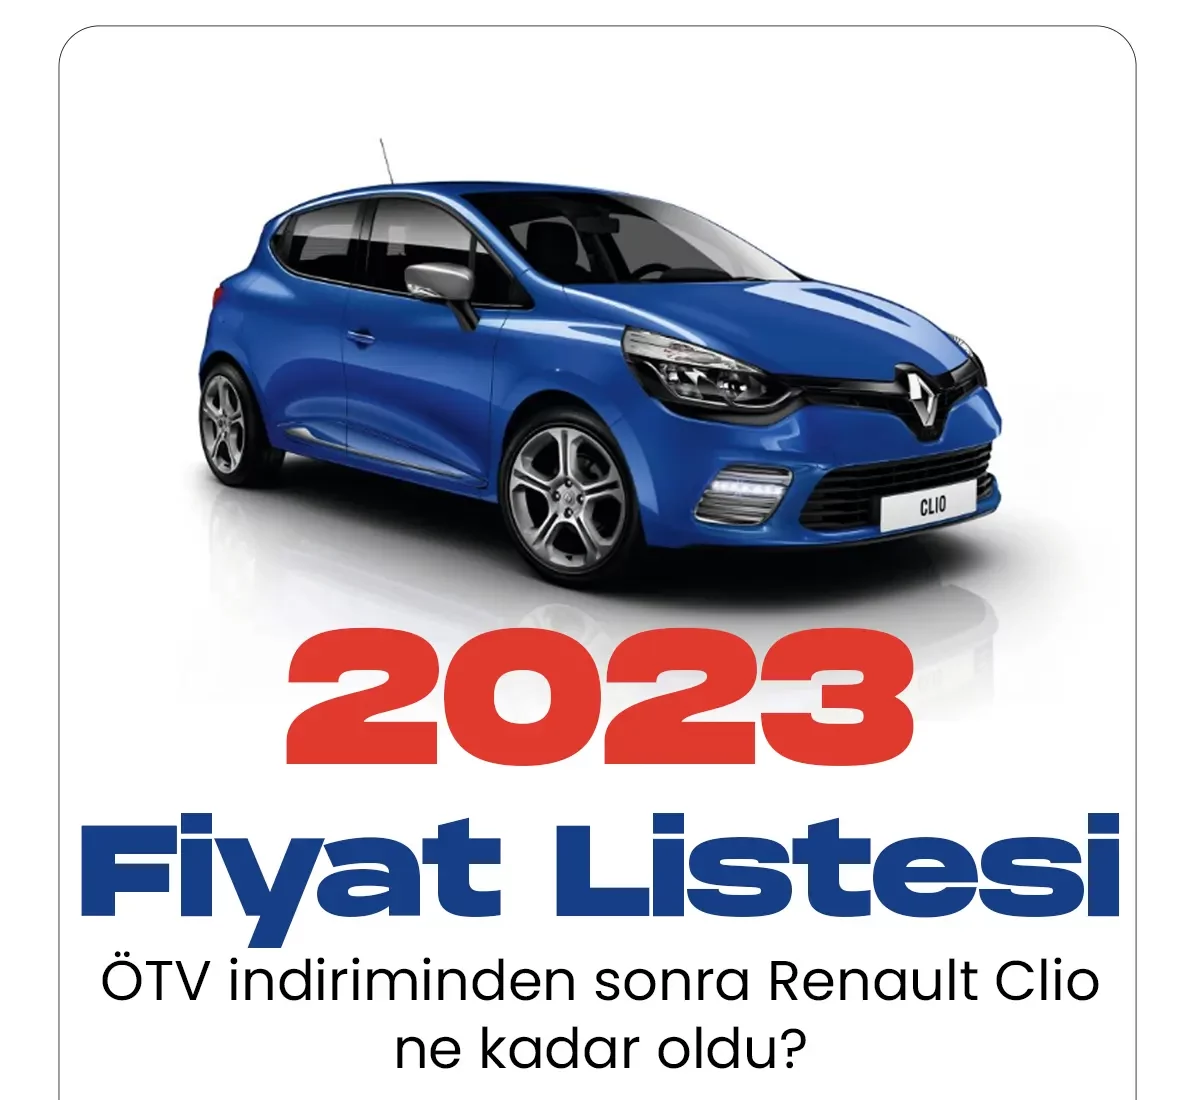 Renault Clio Ocak fiyat listesi yayımlandı.